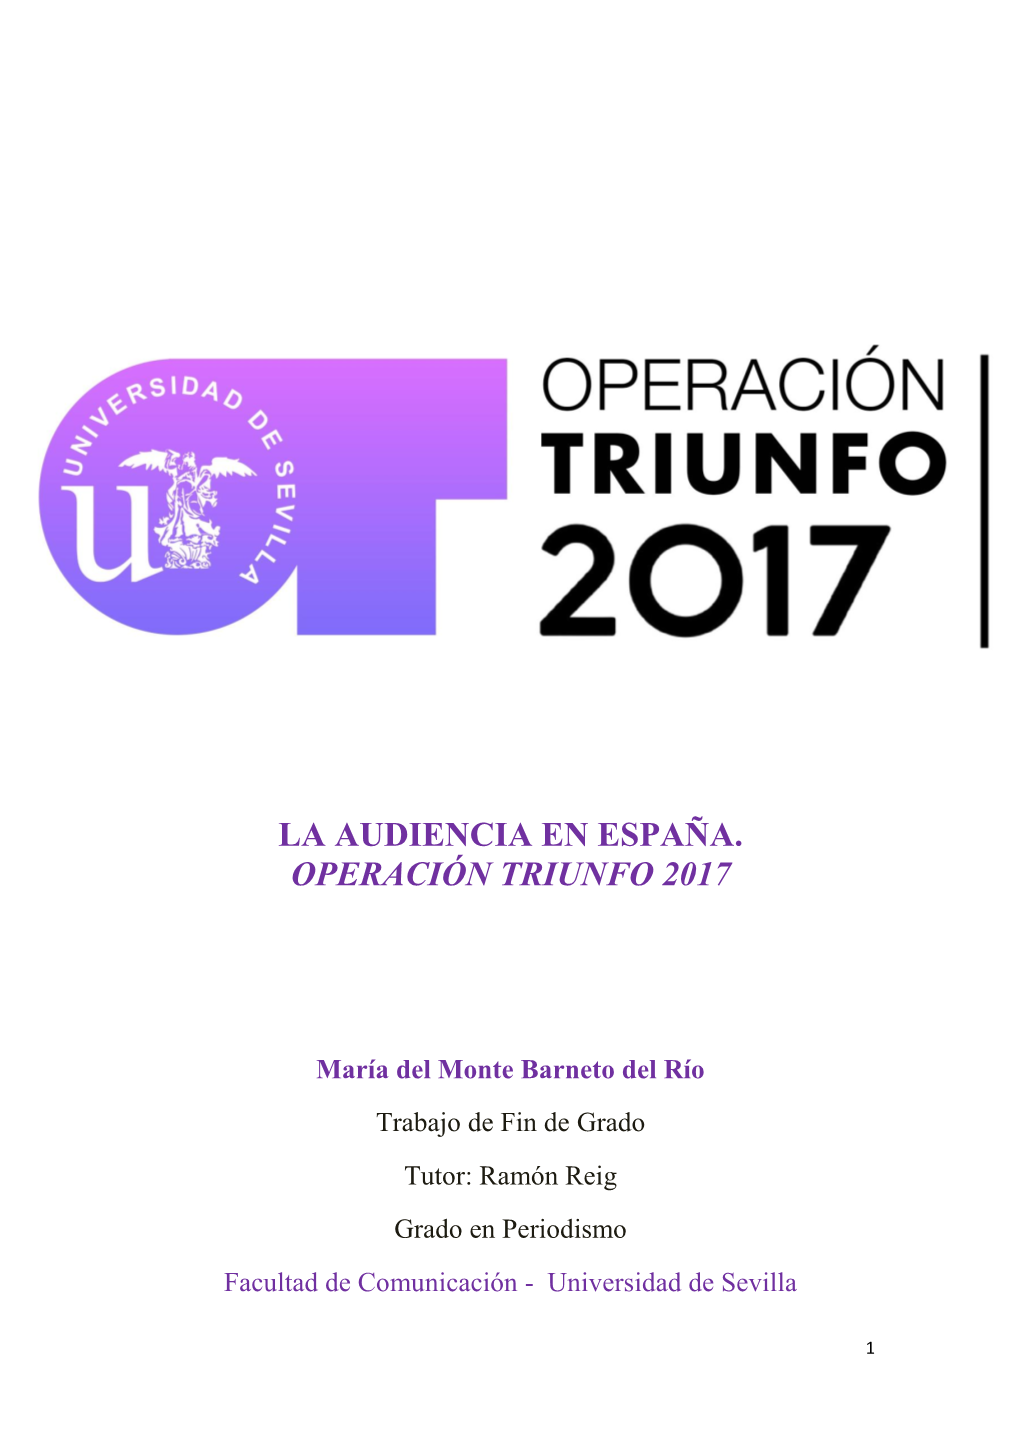 La Audiencia En España. Operación Triunfo 2017